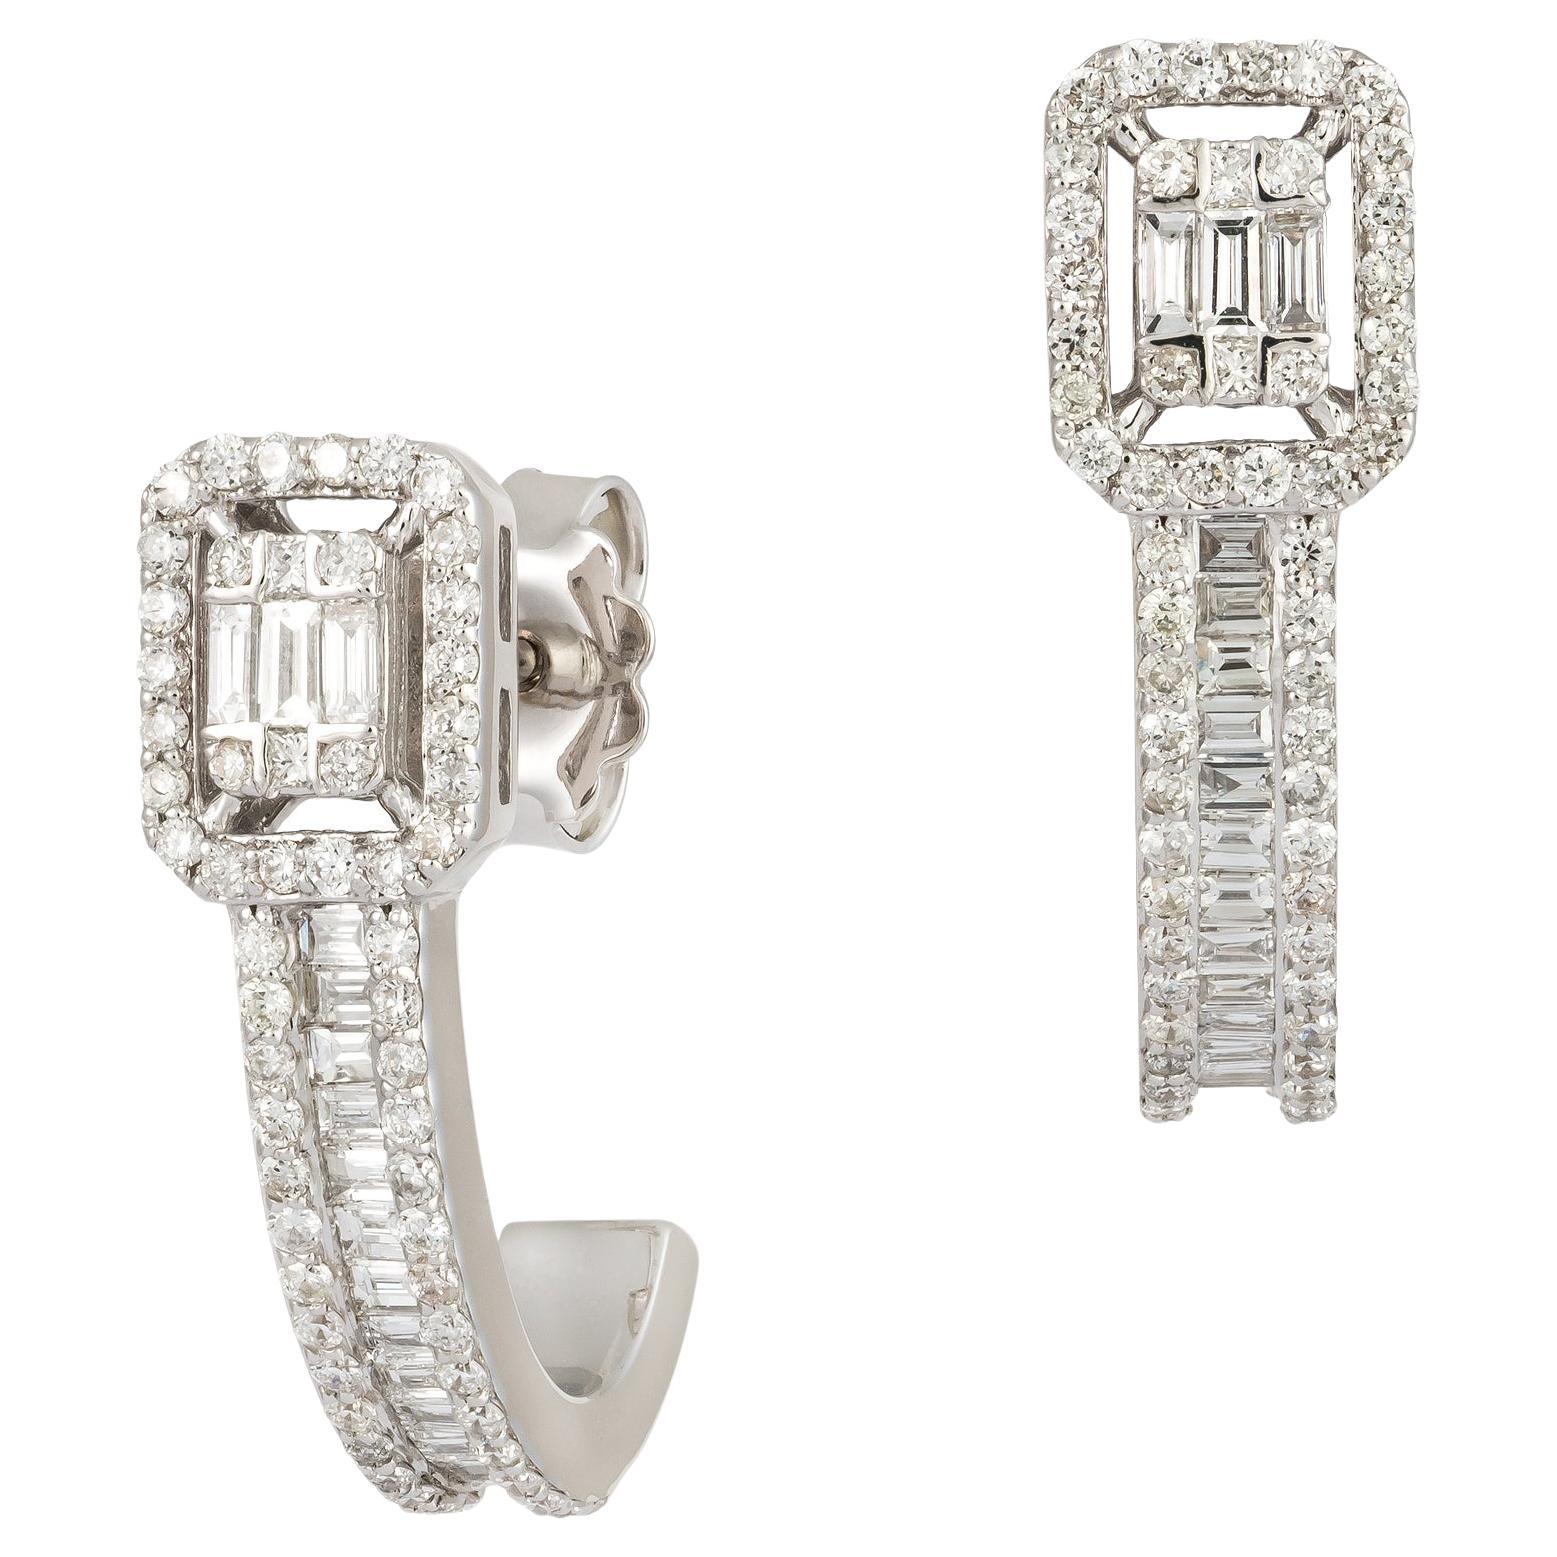 Modern White Gold 18K Earrings Studs Diamond for Her